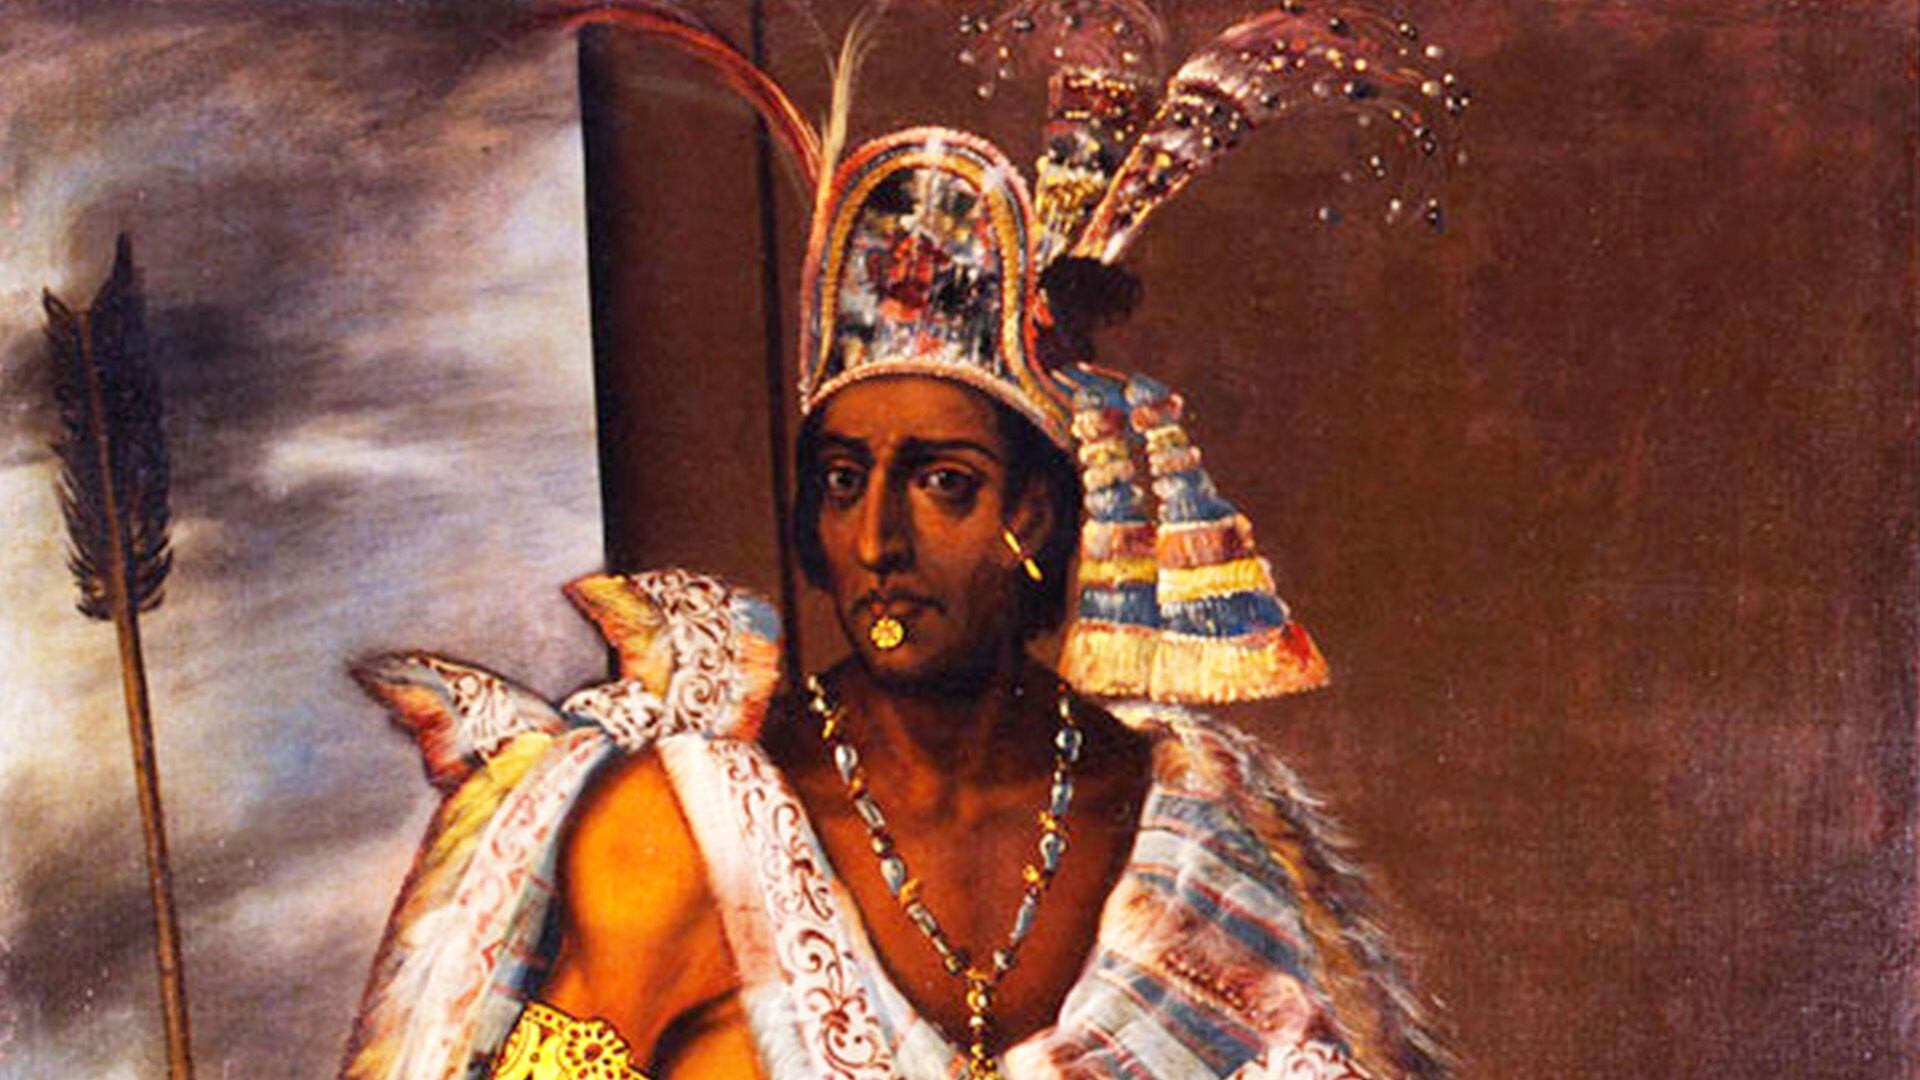 El tesoro de Moctezuma habrían sido joyas que los españoles encontraron a su paso por Tenochtitlán